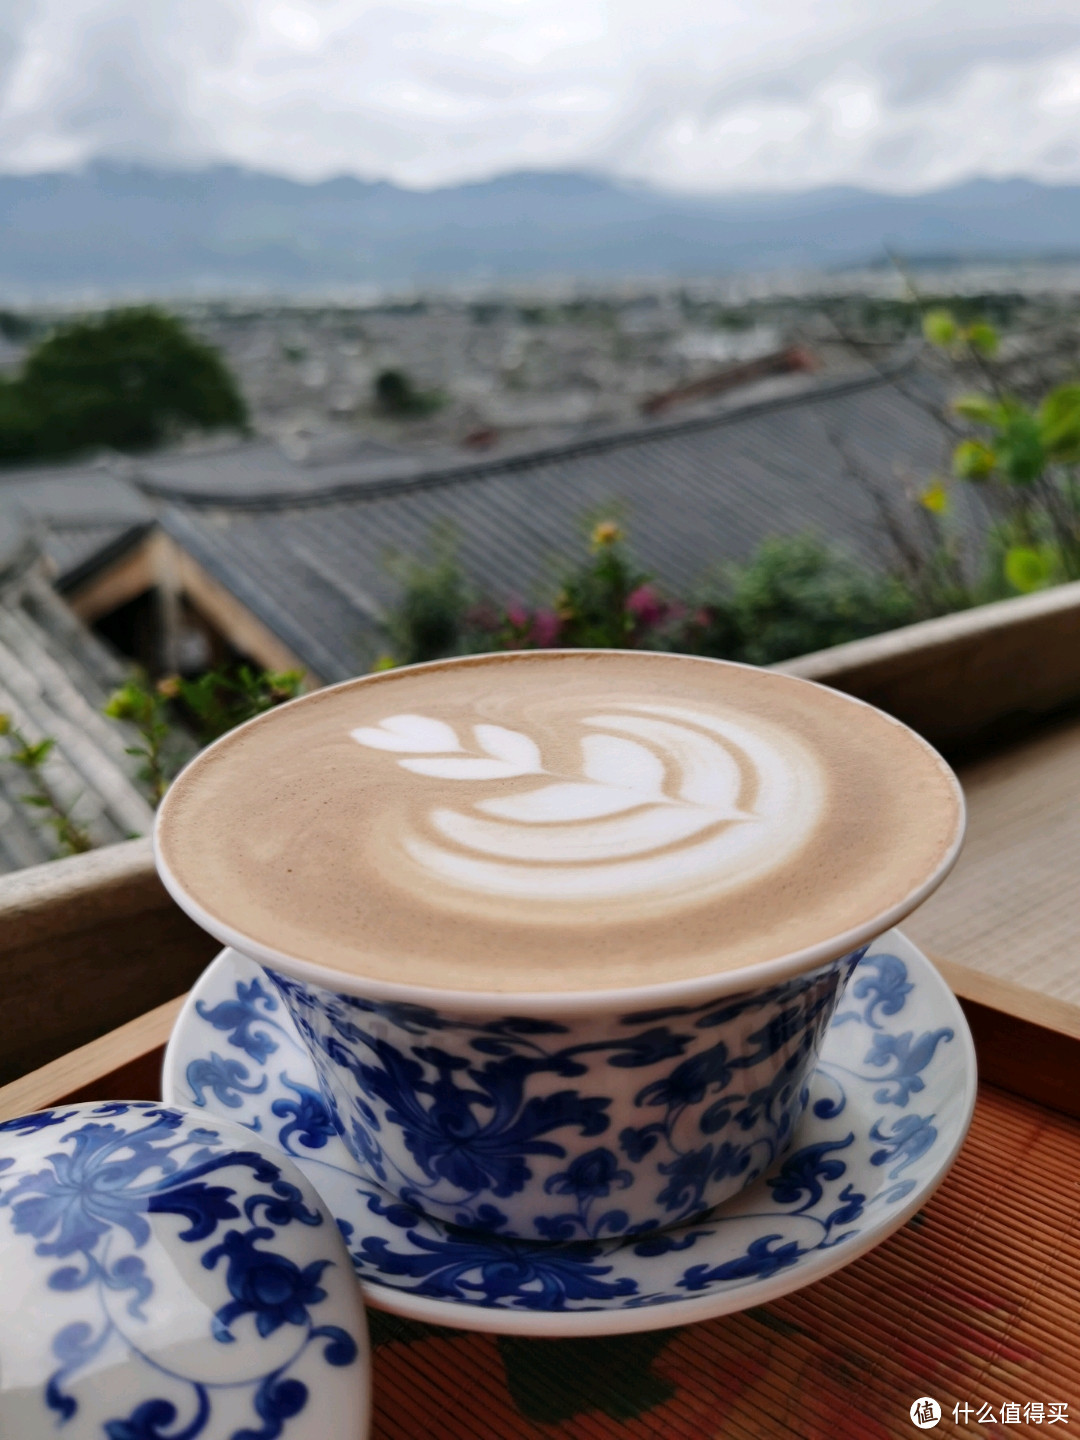 丽江丨登高远眺一览丽江古城全貌，犄角旮旯观景咖啡店安排上